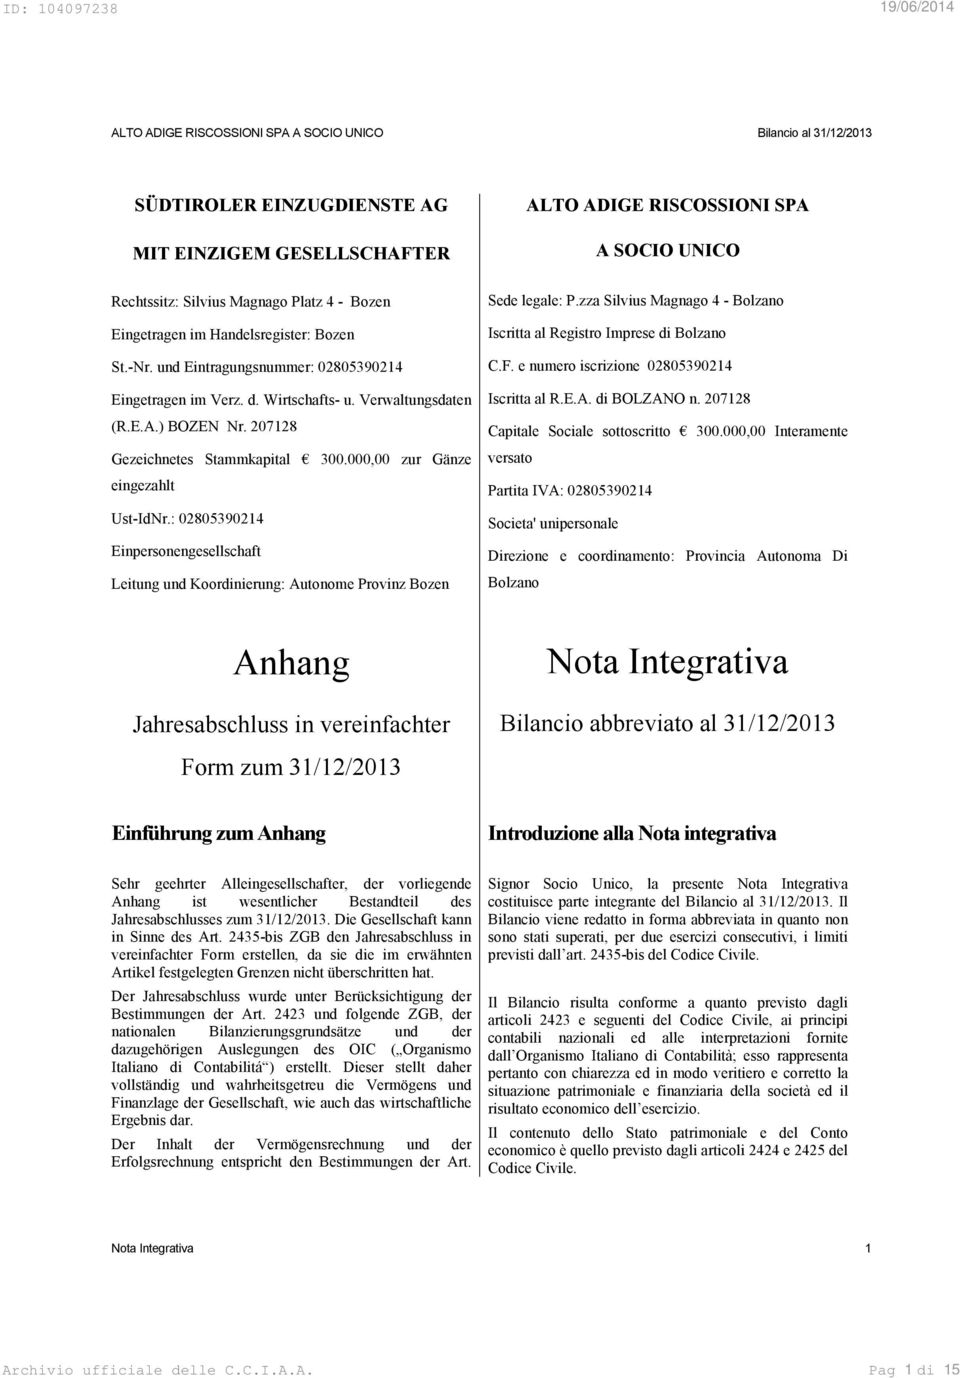 : 02805390214 Einpersonengesellschaft Leitung und Koordinierung: Autonome Provinz Bozen Sede legale: P.zza Silvius Magnago 4 - Bolzano Iscritta al Registro Imprese di Bolzano C.F.